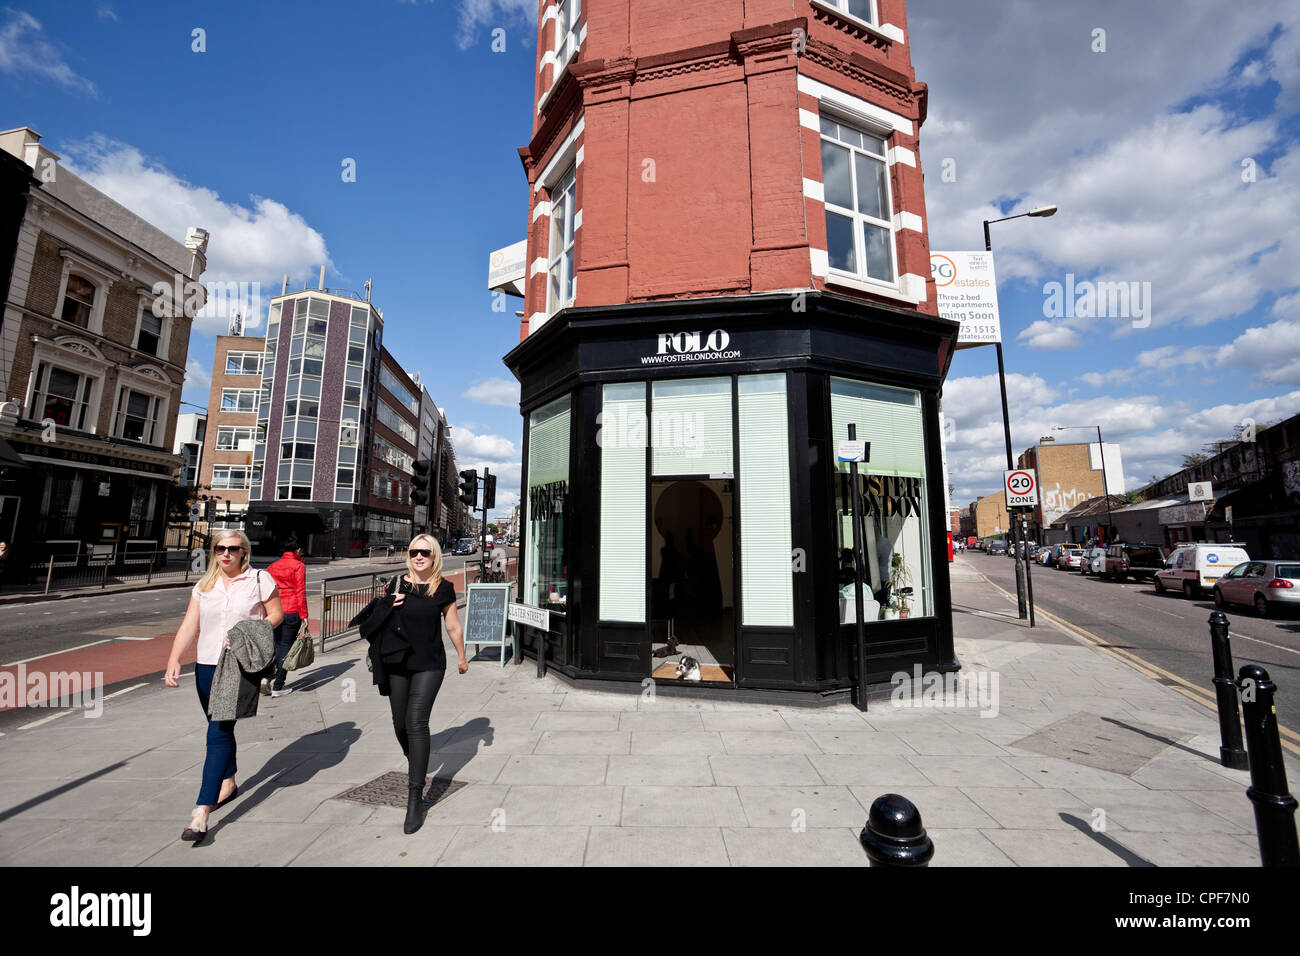 Scène de rue, Clater Shoreditch, London, E1, England, UK Banque D'Images